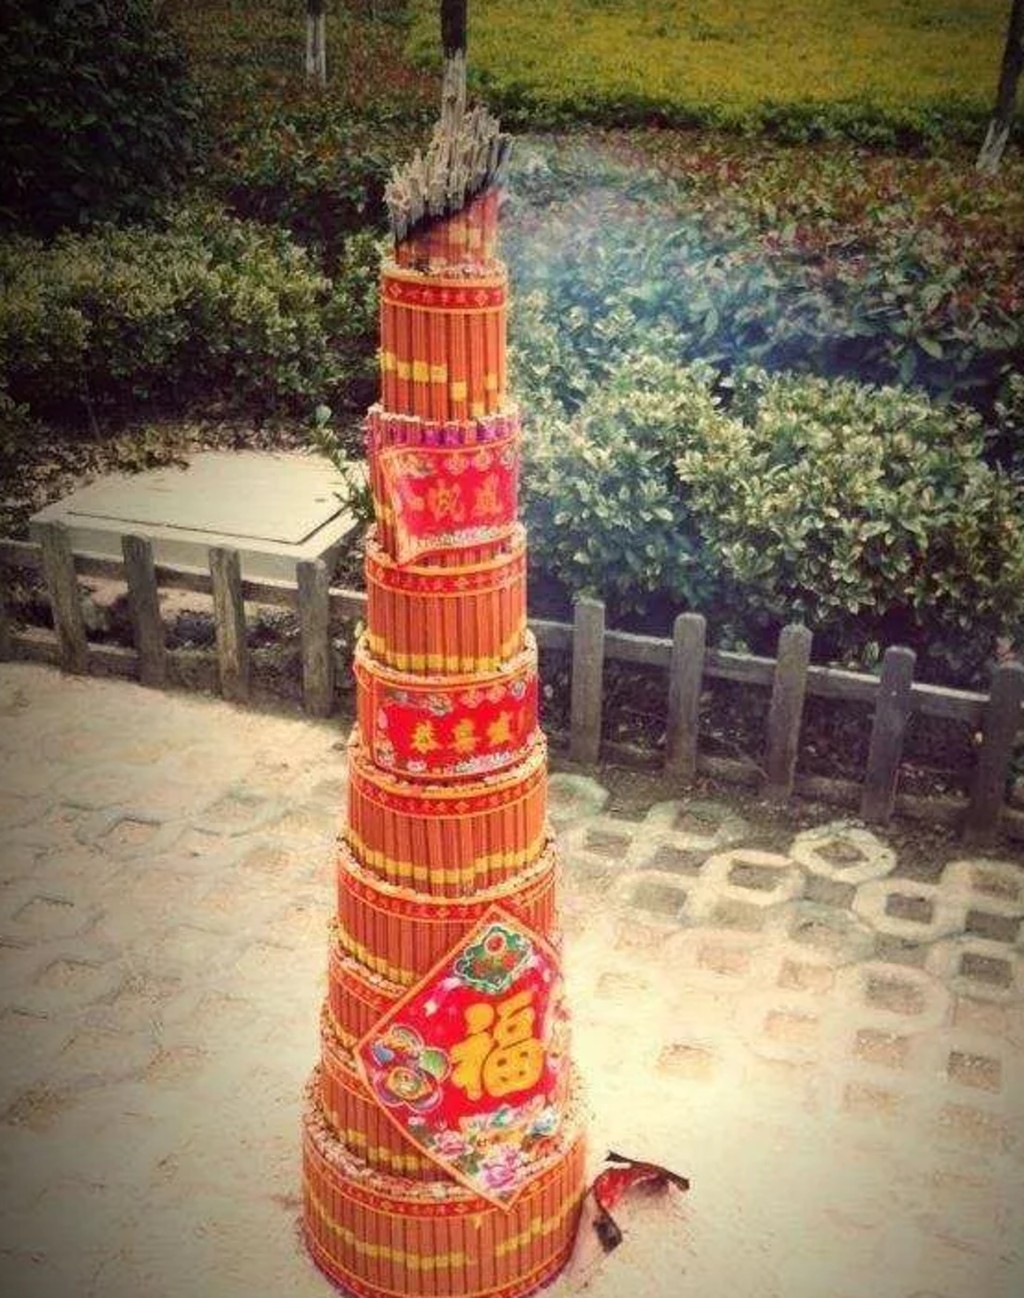 燃斗香拜神是江蘇的民間習俗。